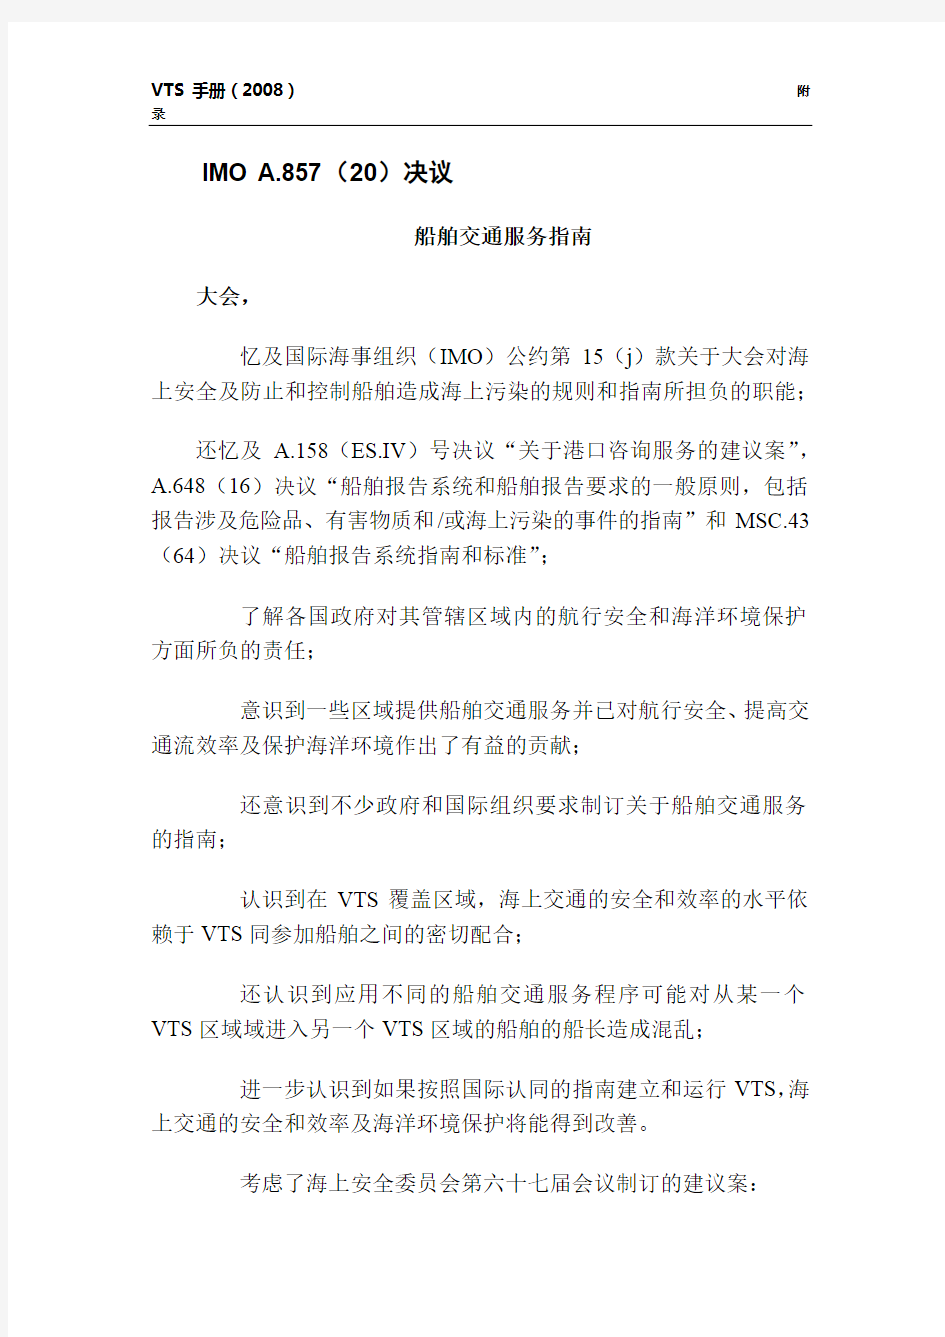 IMO A.857(20)决议船舶交通服务指南(中文完全版)